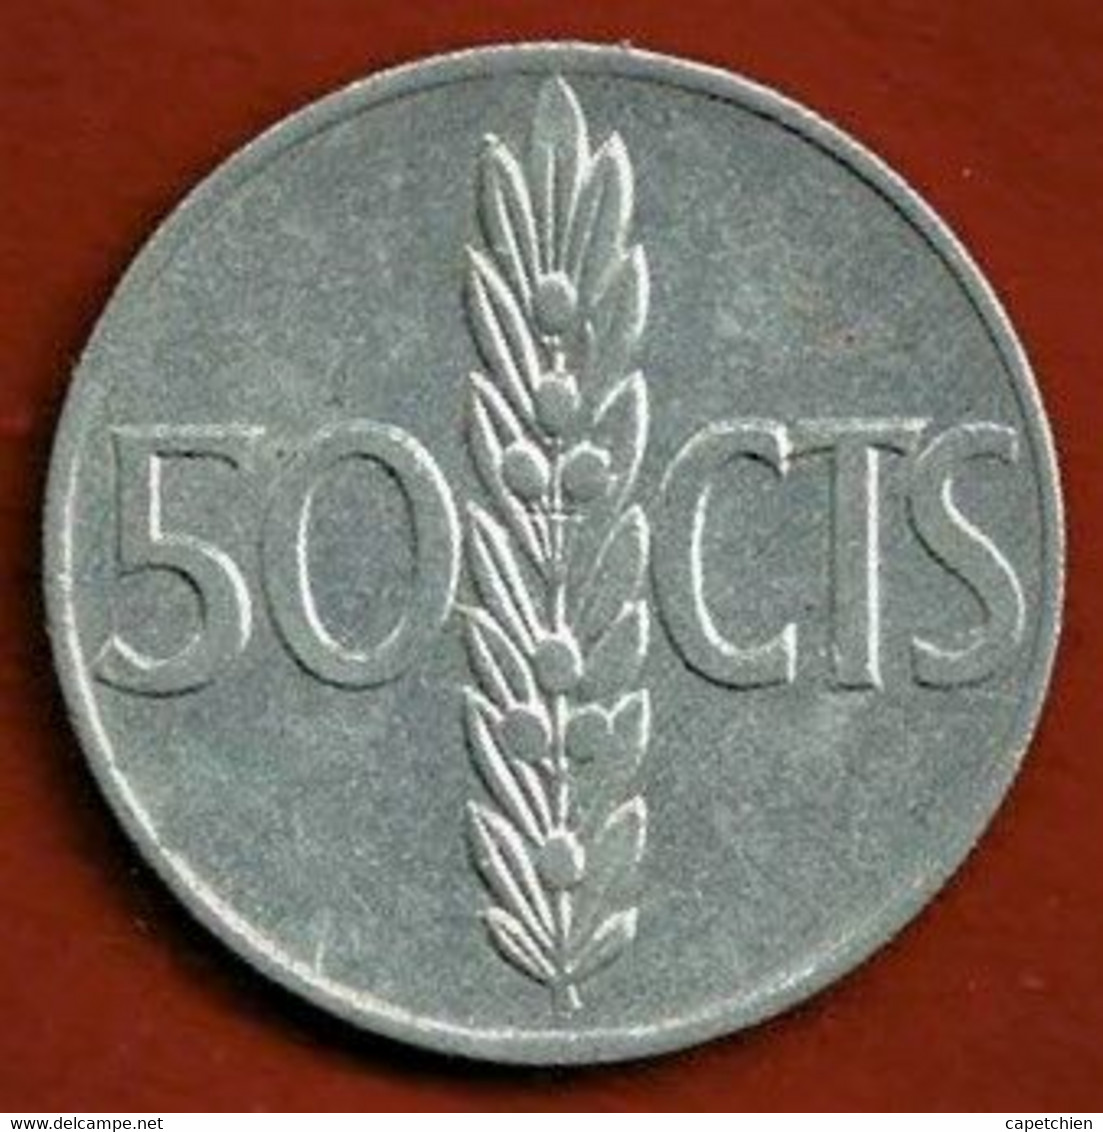 ESPAGNE / 50 CENTIMOS / FRANCO / 1966 / ETAT SUP / ALU - 50 Céntimos